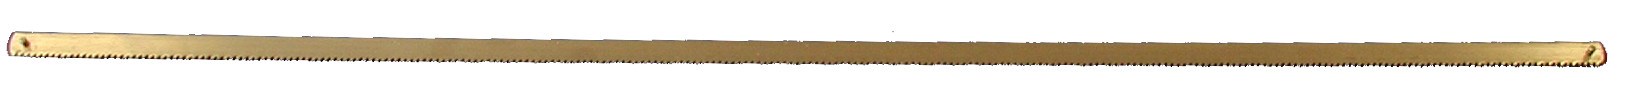 Sagblad  Kamlock 63cm/25''